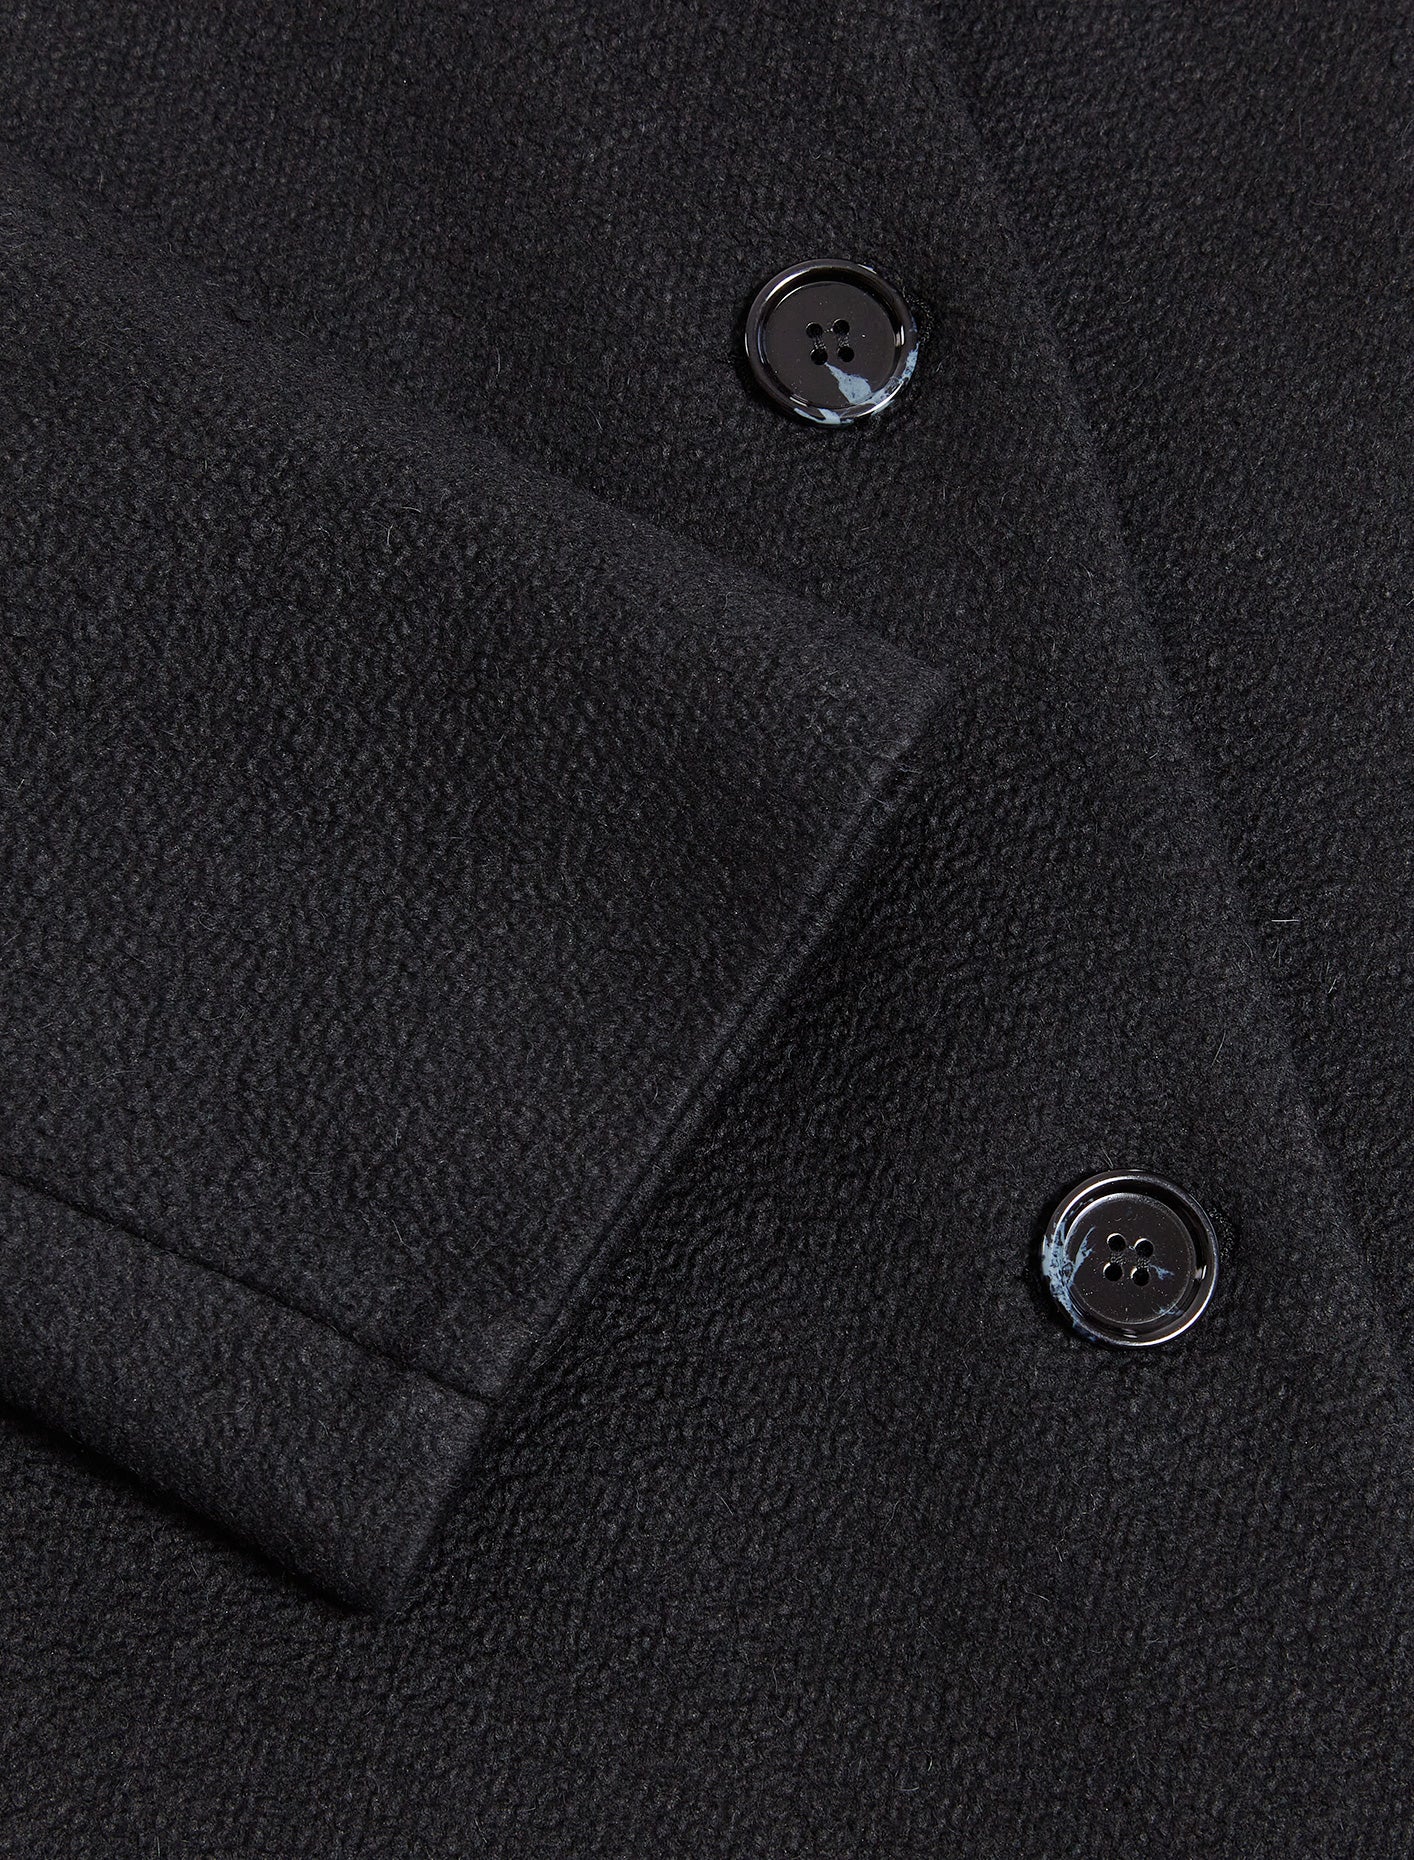 Acne Studios Tailored Twill Coat, Black